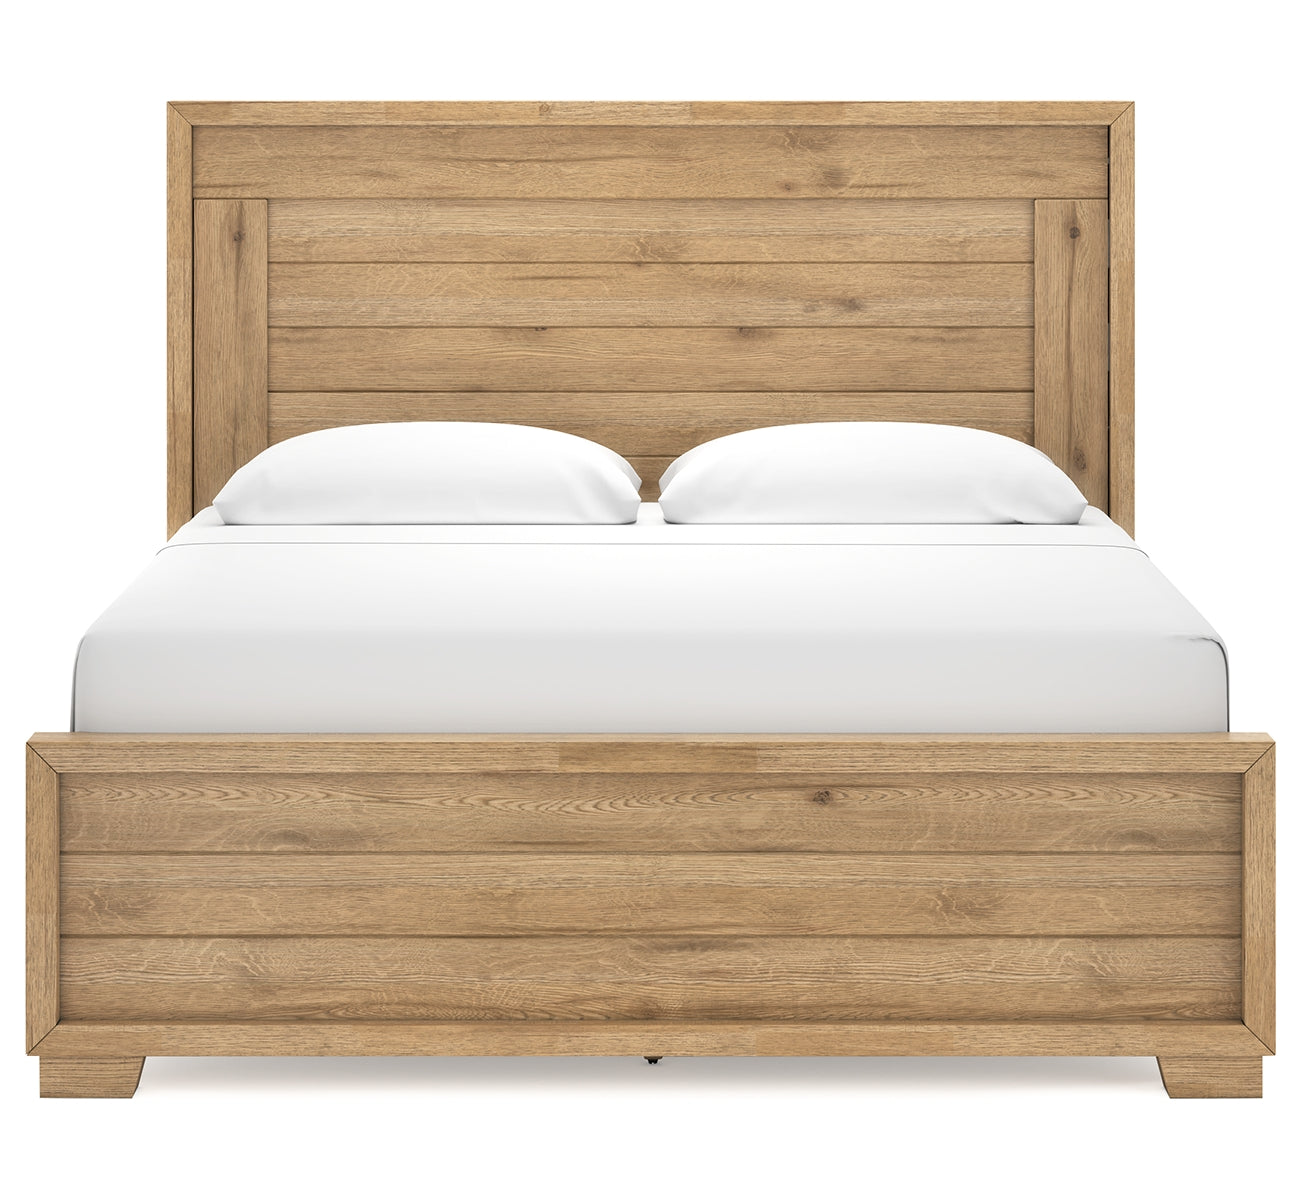 Galliden King Panel Bed